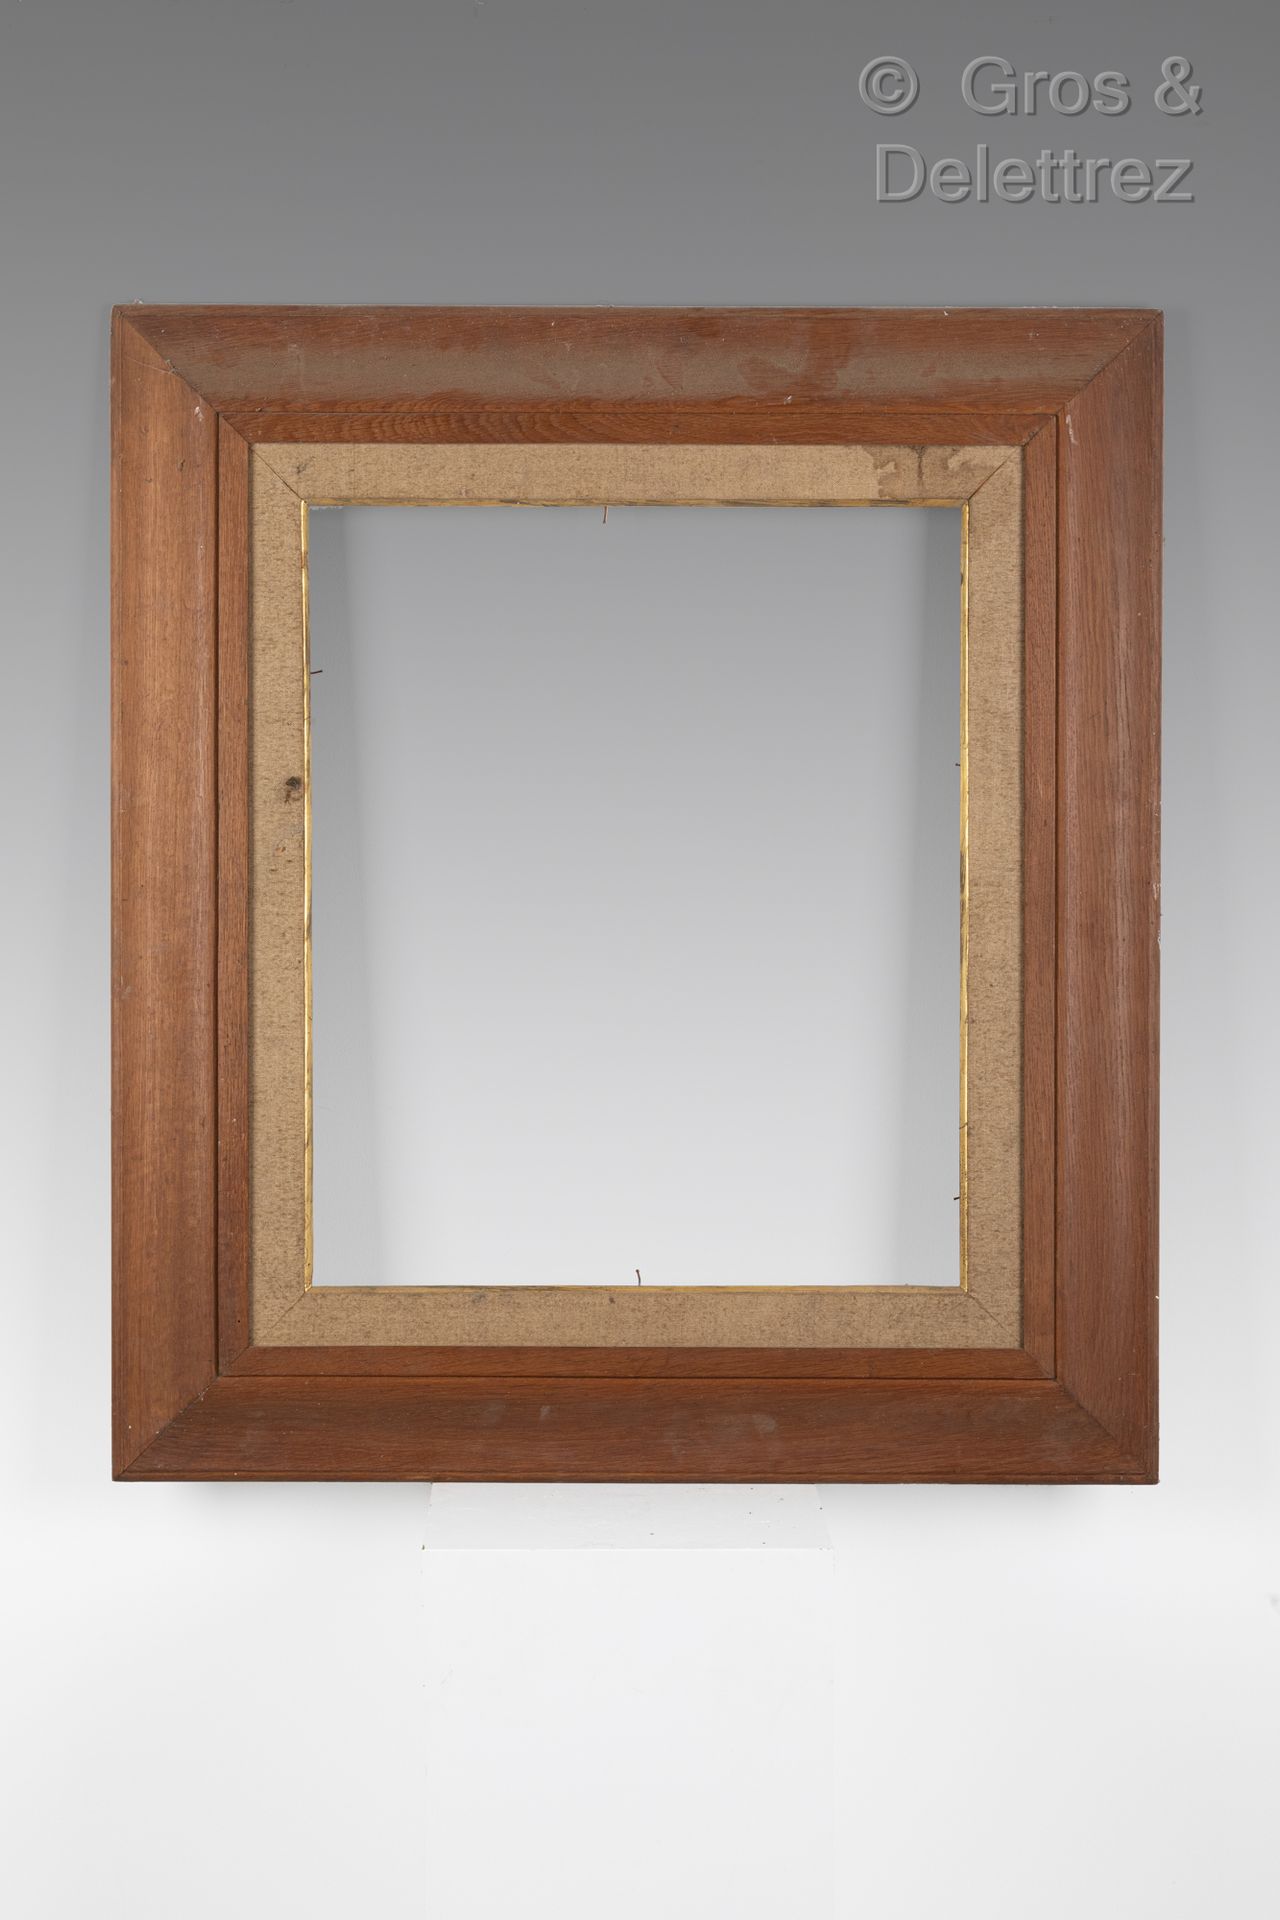 Null Umgedrehter Rahmen aus geformtem Nussbaumholz

Um 1920

60 x 69,7 x 10,5 cm&hellip;